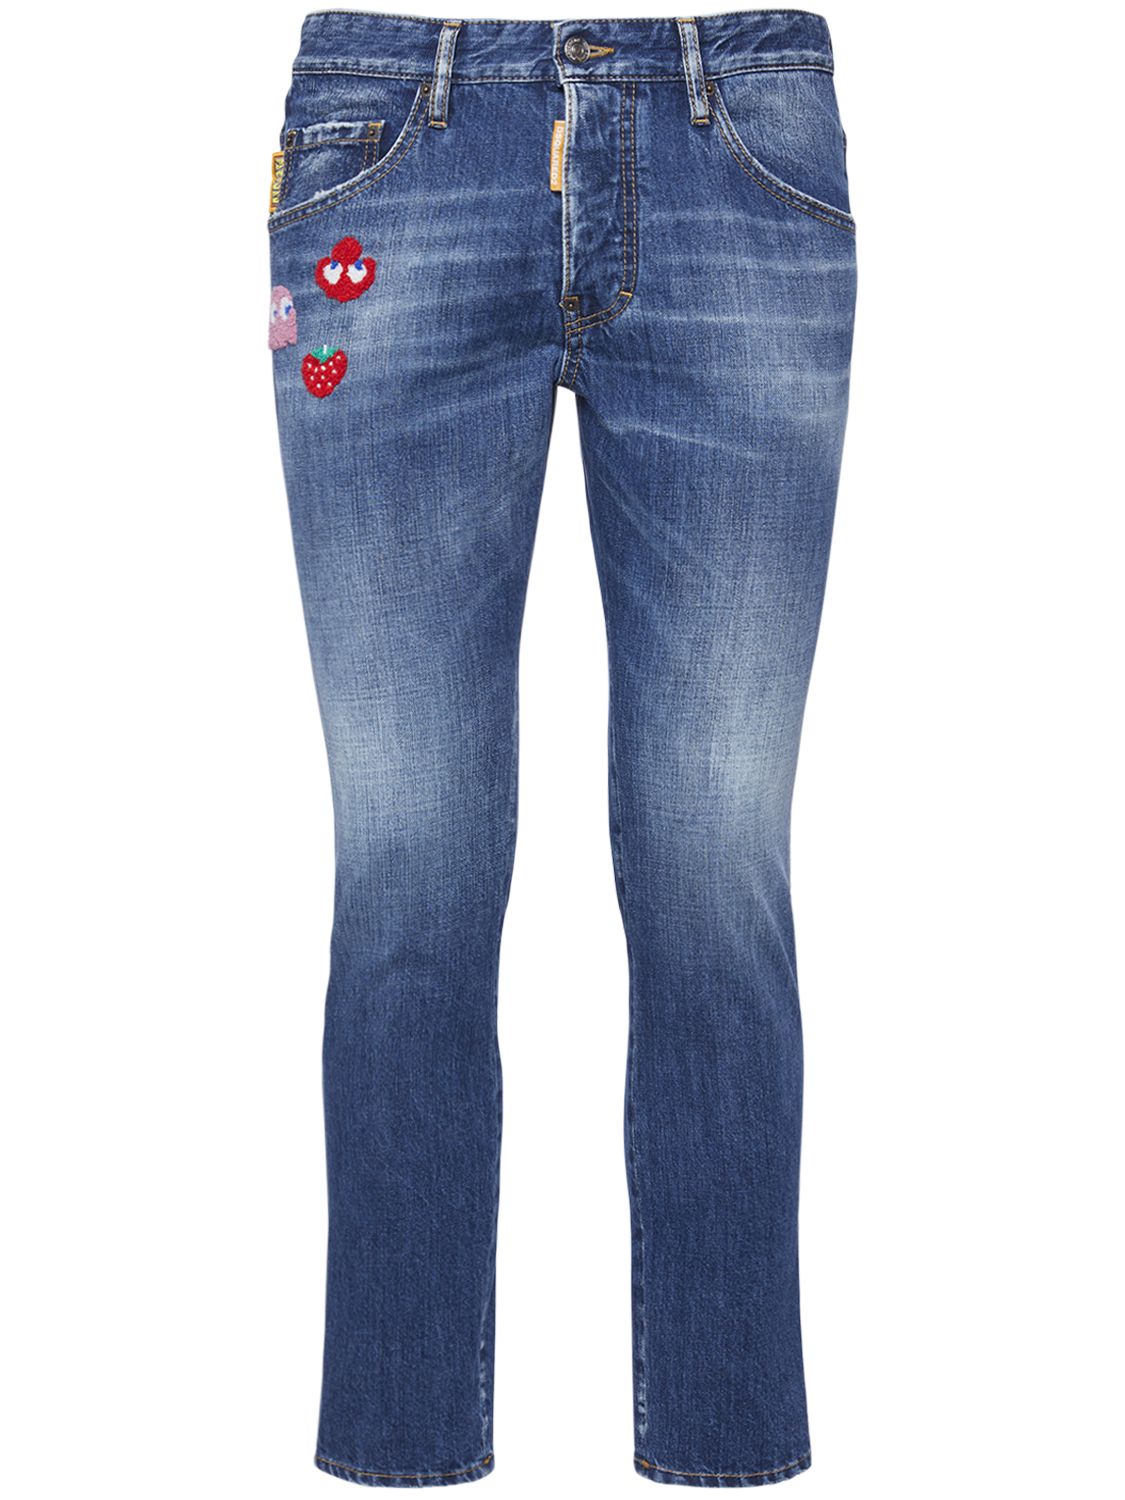 Verwaschene Skater-jeans Aus Baumwolldenim - DSQUARED2 - Modalova